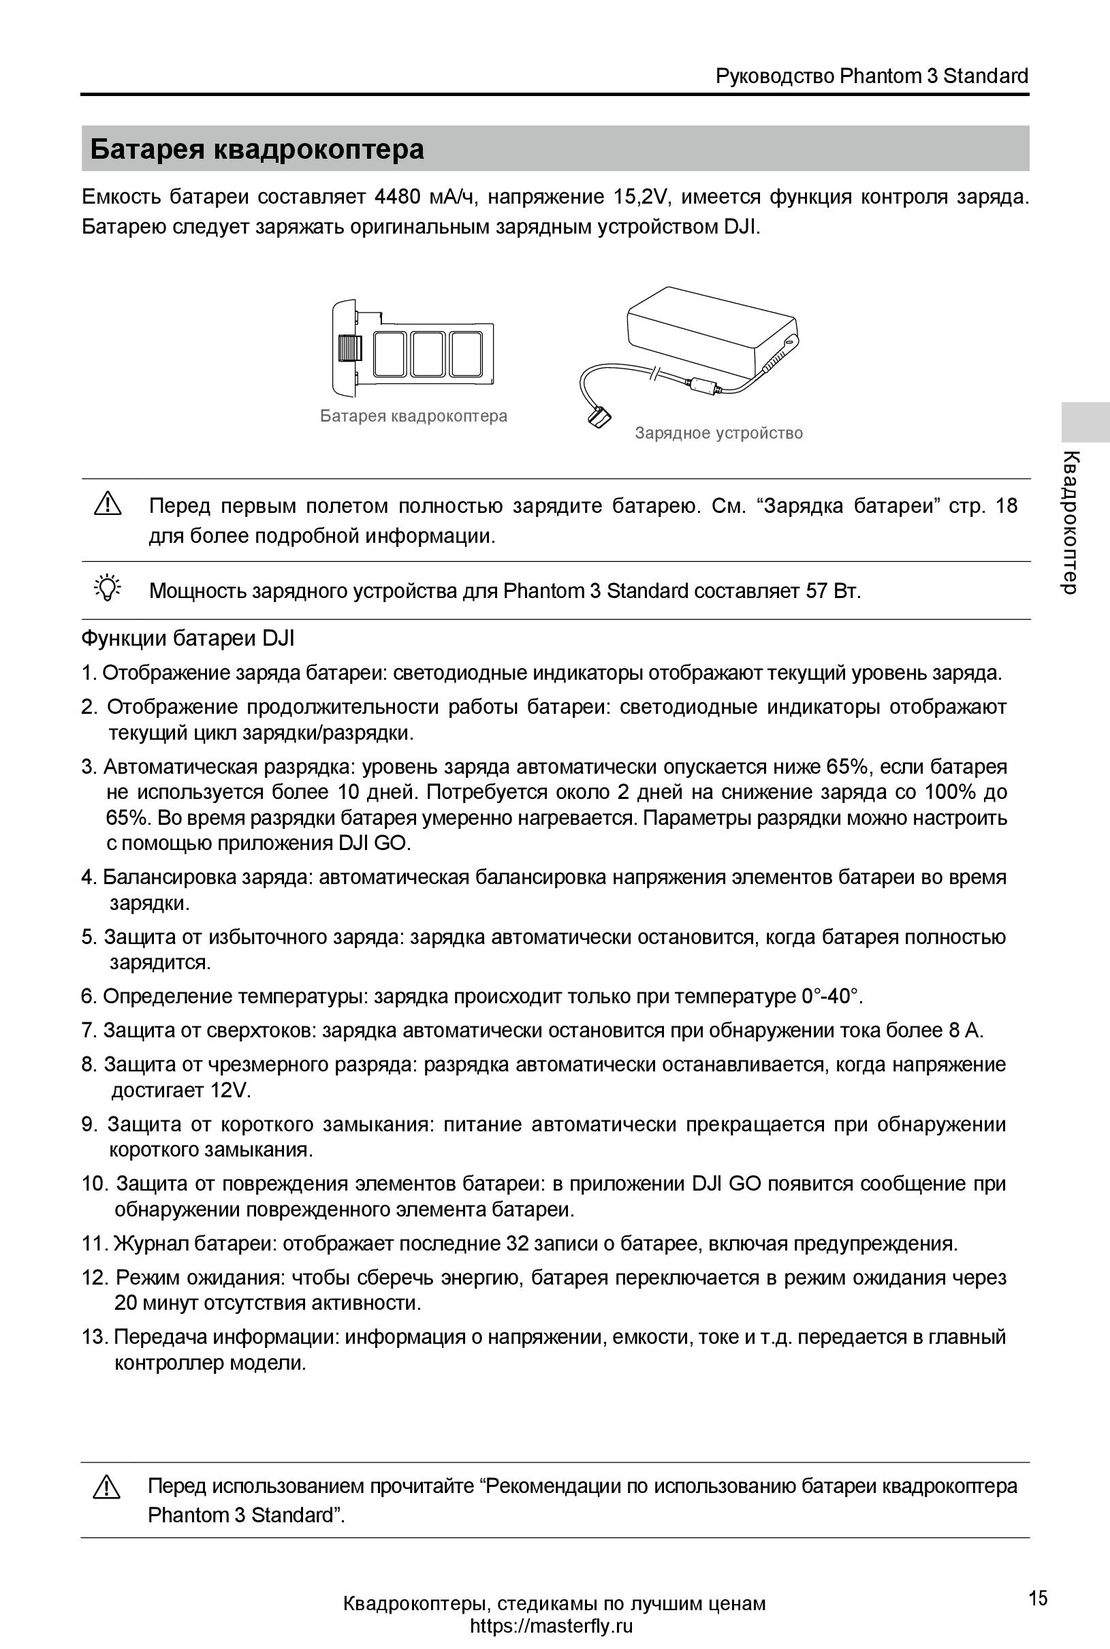 DJI Phantom 3 Standard инструкция на русском - страница 15